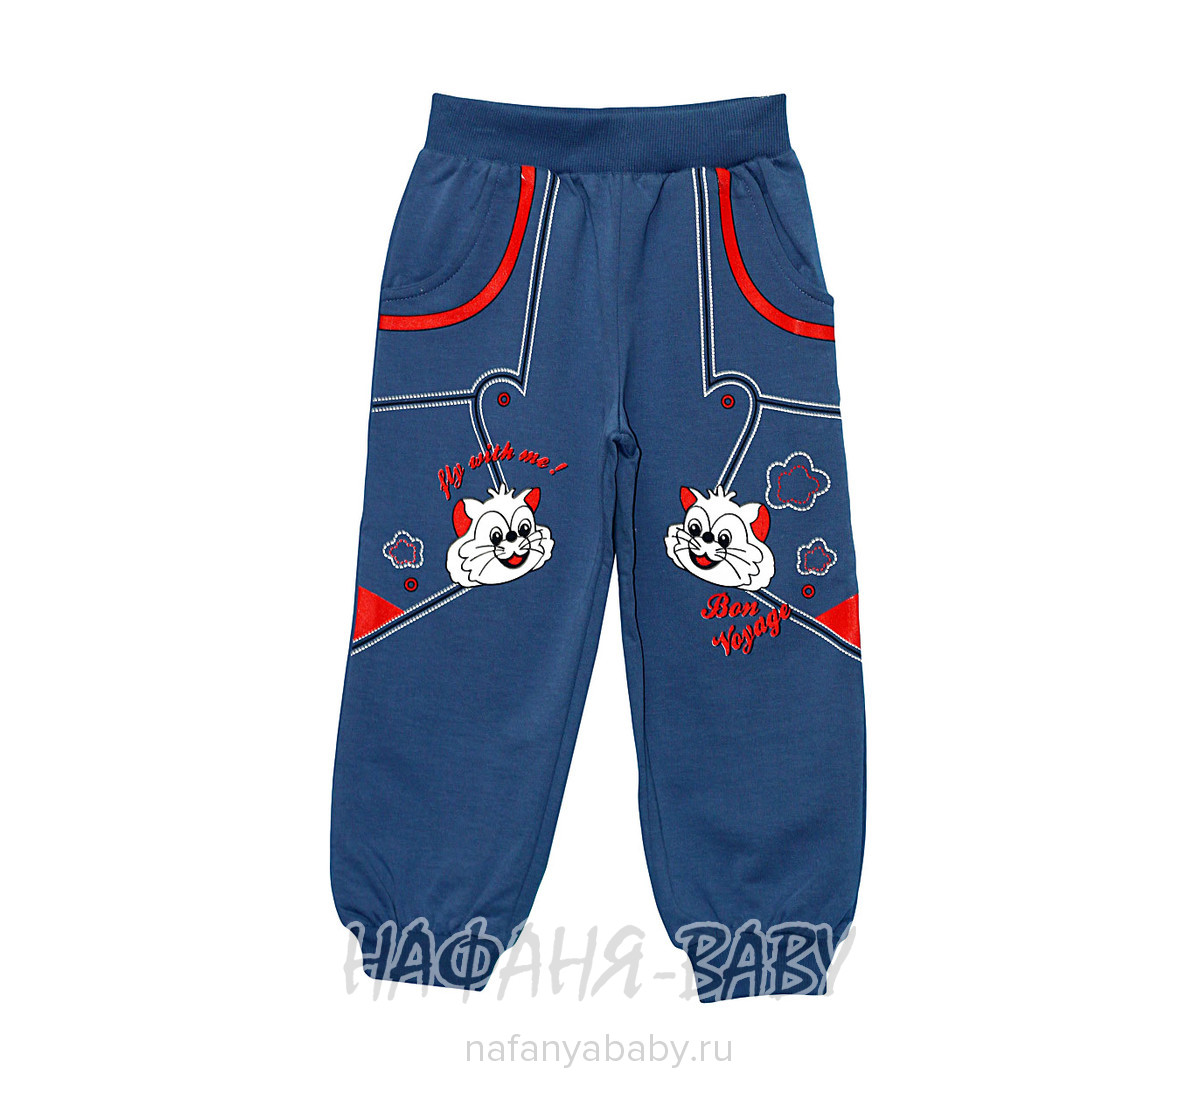 Детские брюки UNRULY арт: 4541, цвет сине-серый, оптом Турция